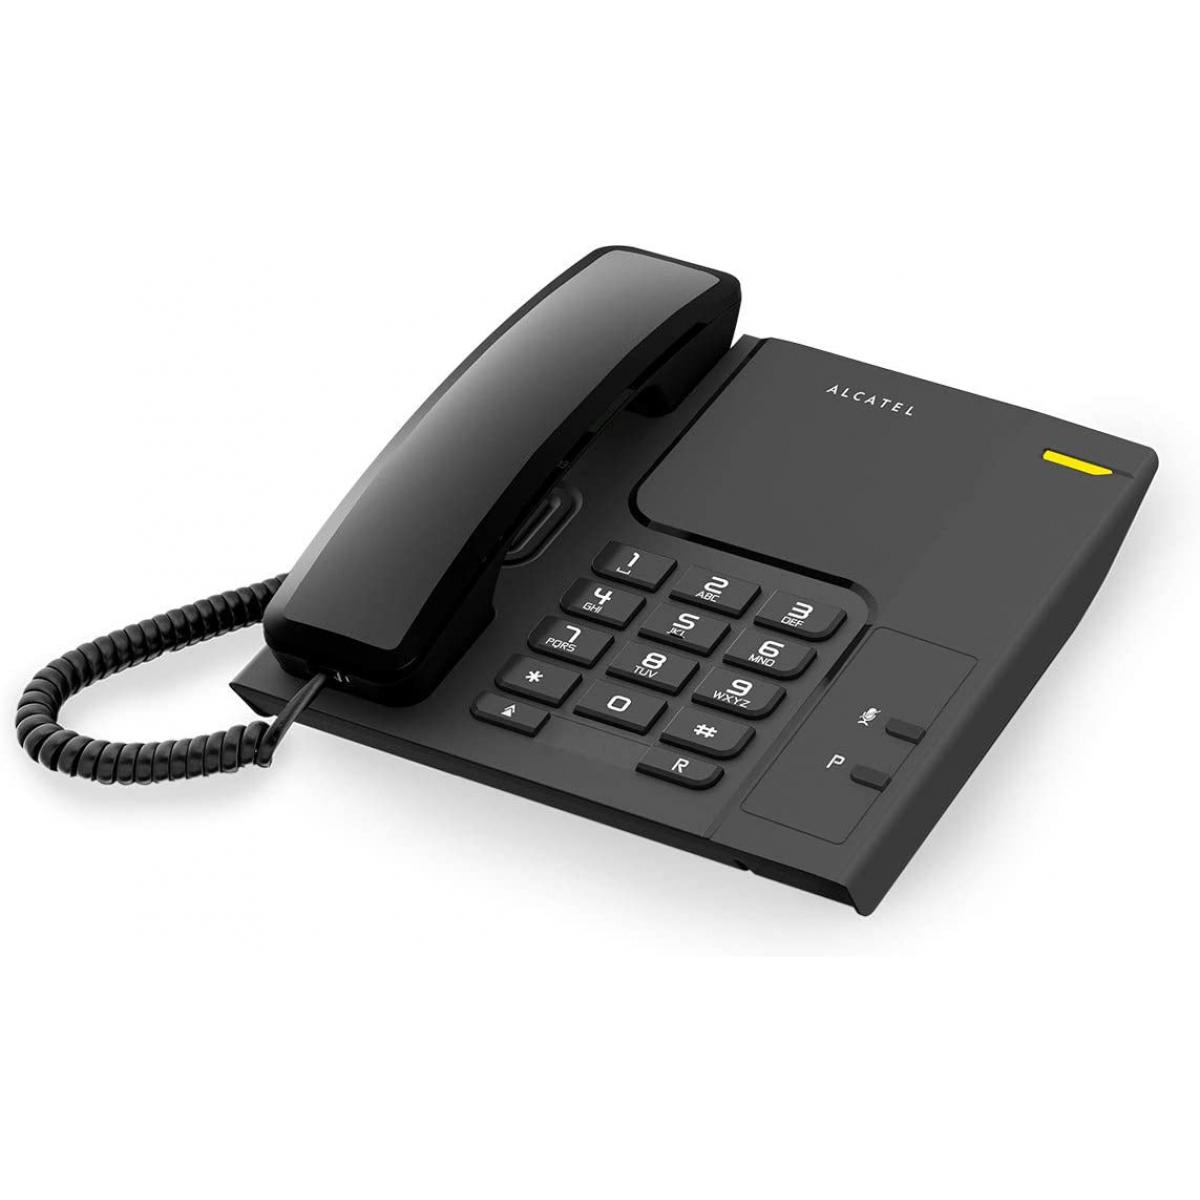 Alcatel - telephone filaire analogique Noir - Téléphone fixe filaire